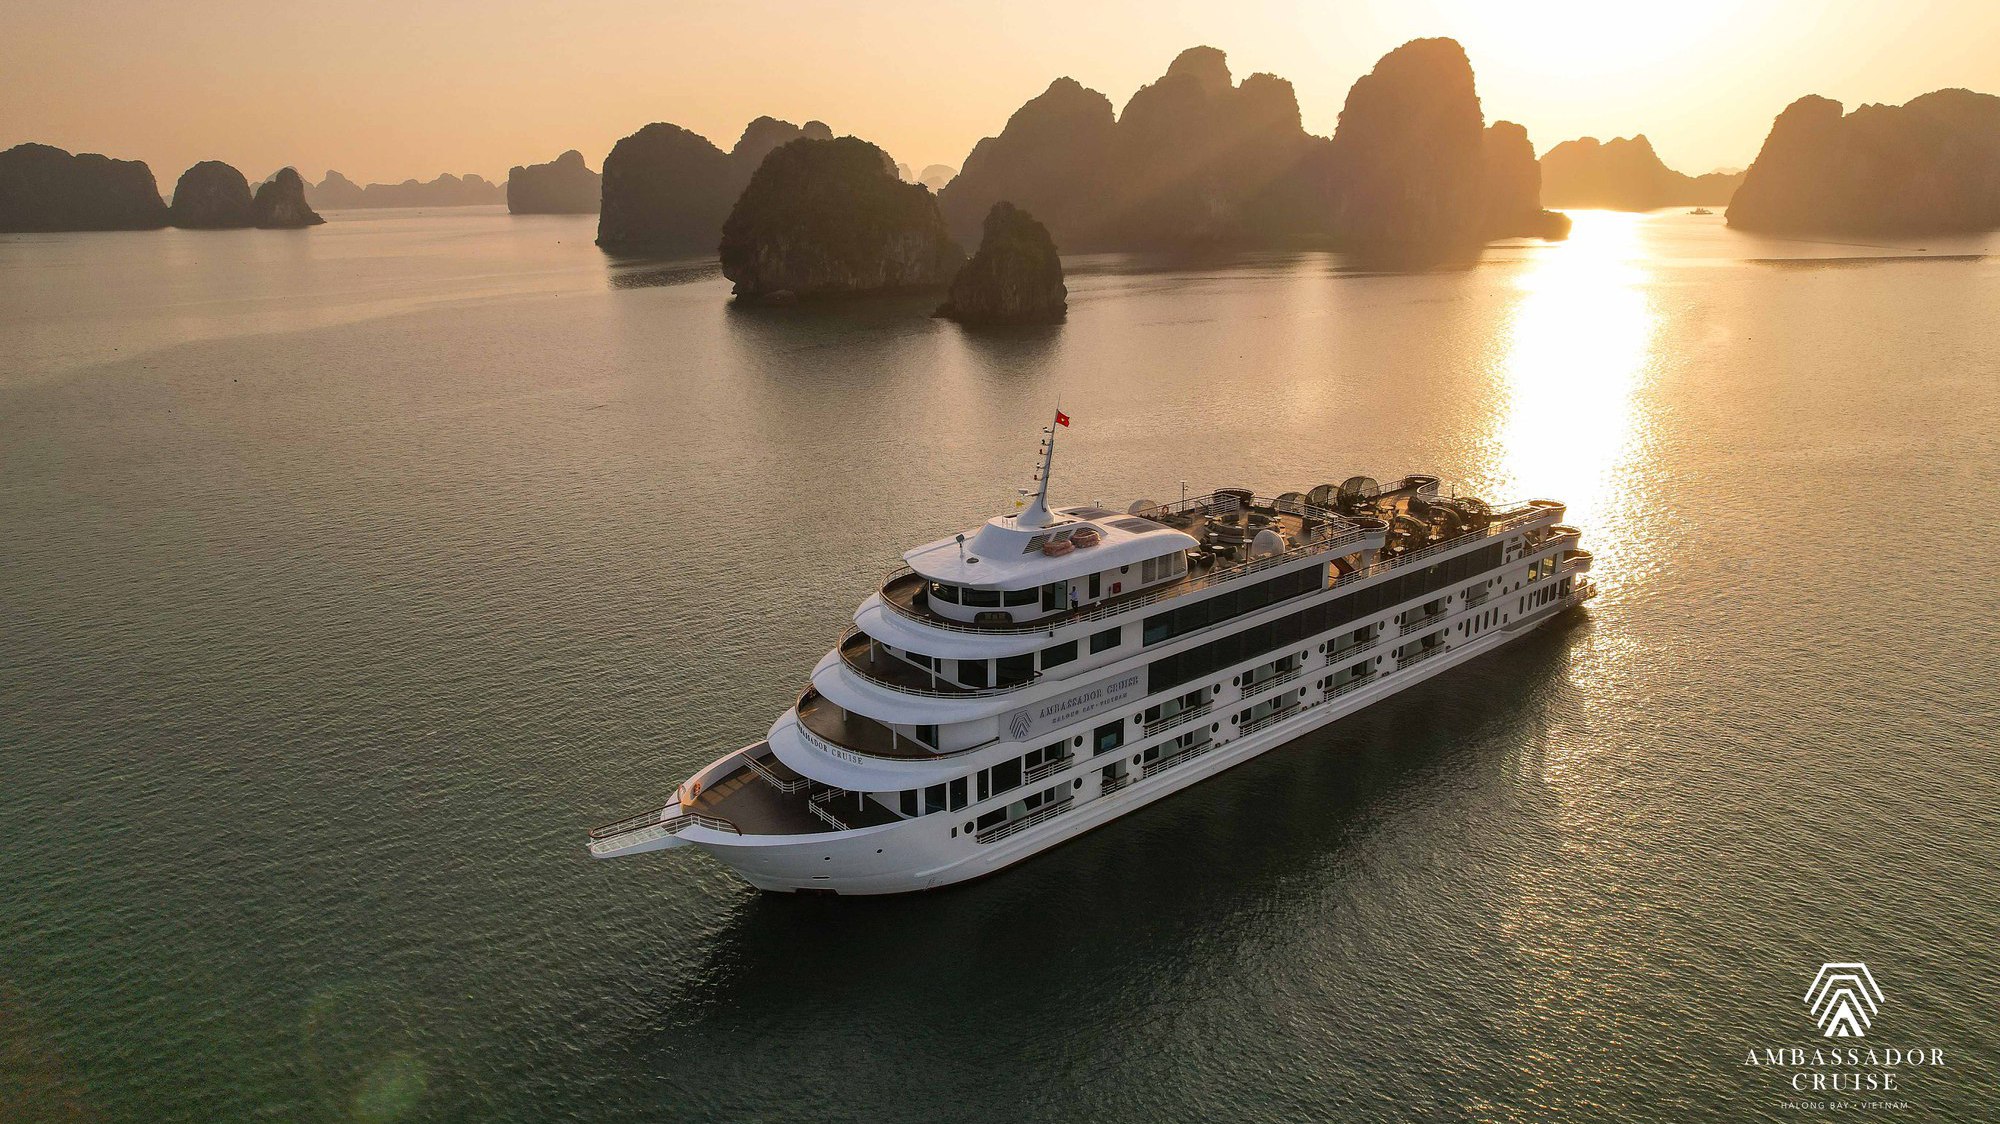 Du thuyền Ambassador II - điểm nhấn mới cho du lịch vịnh Hạ Long